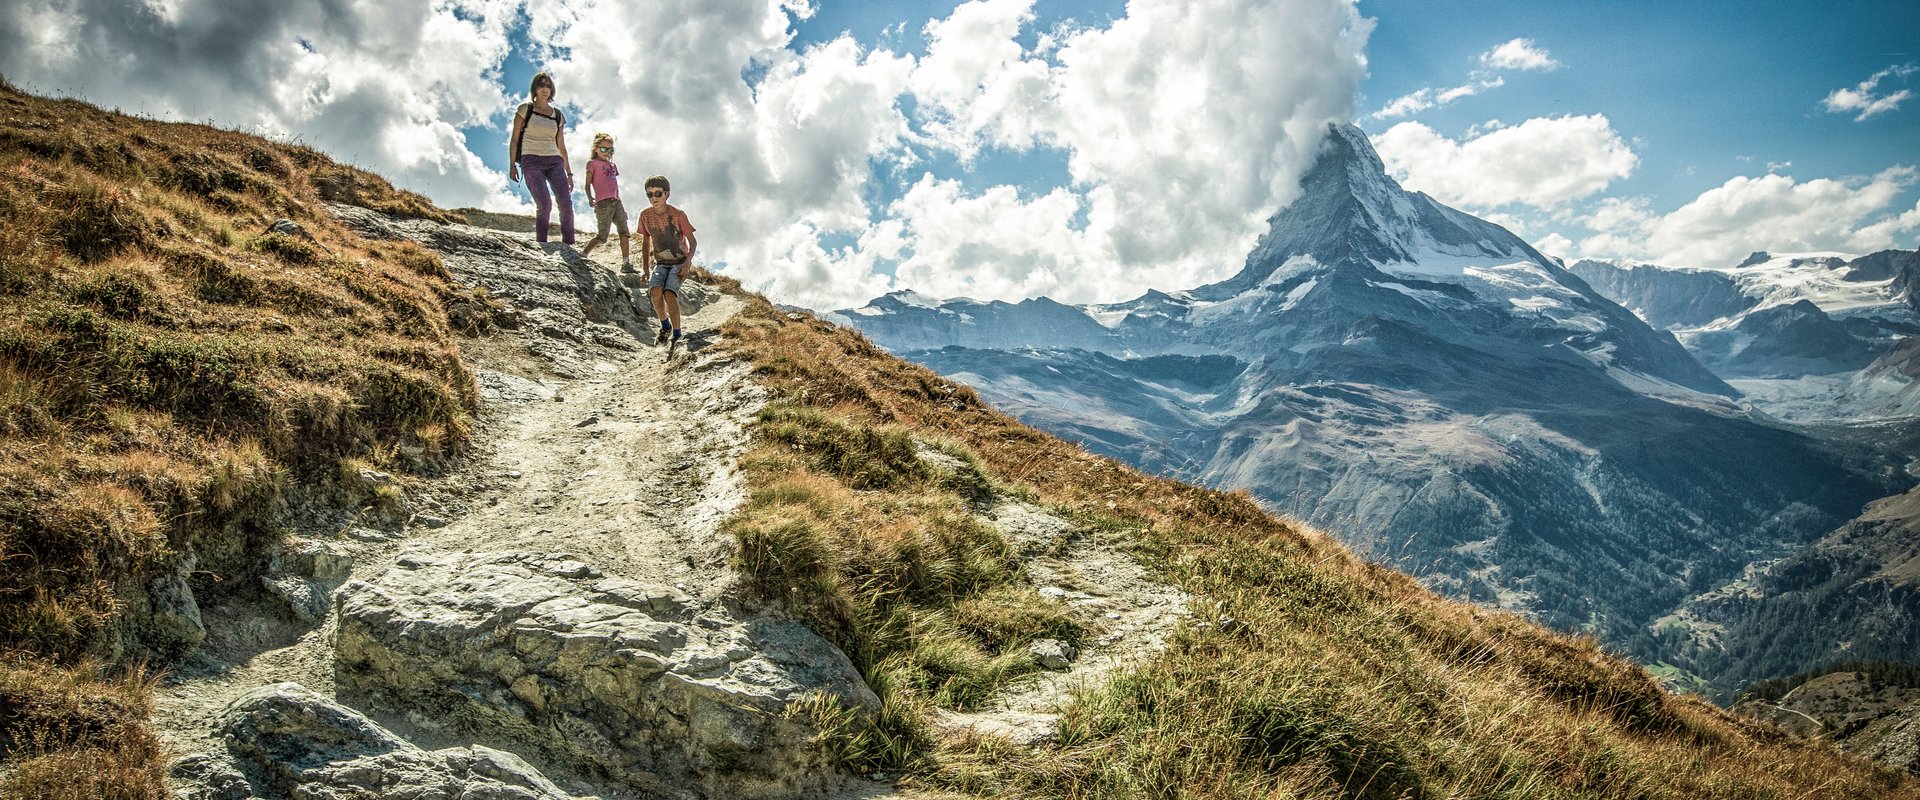 Familie wandert am Murmelweg in Zermatt